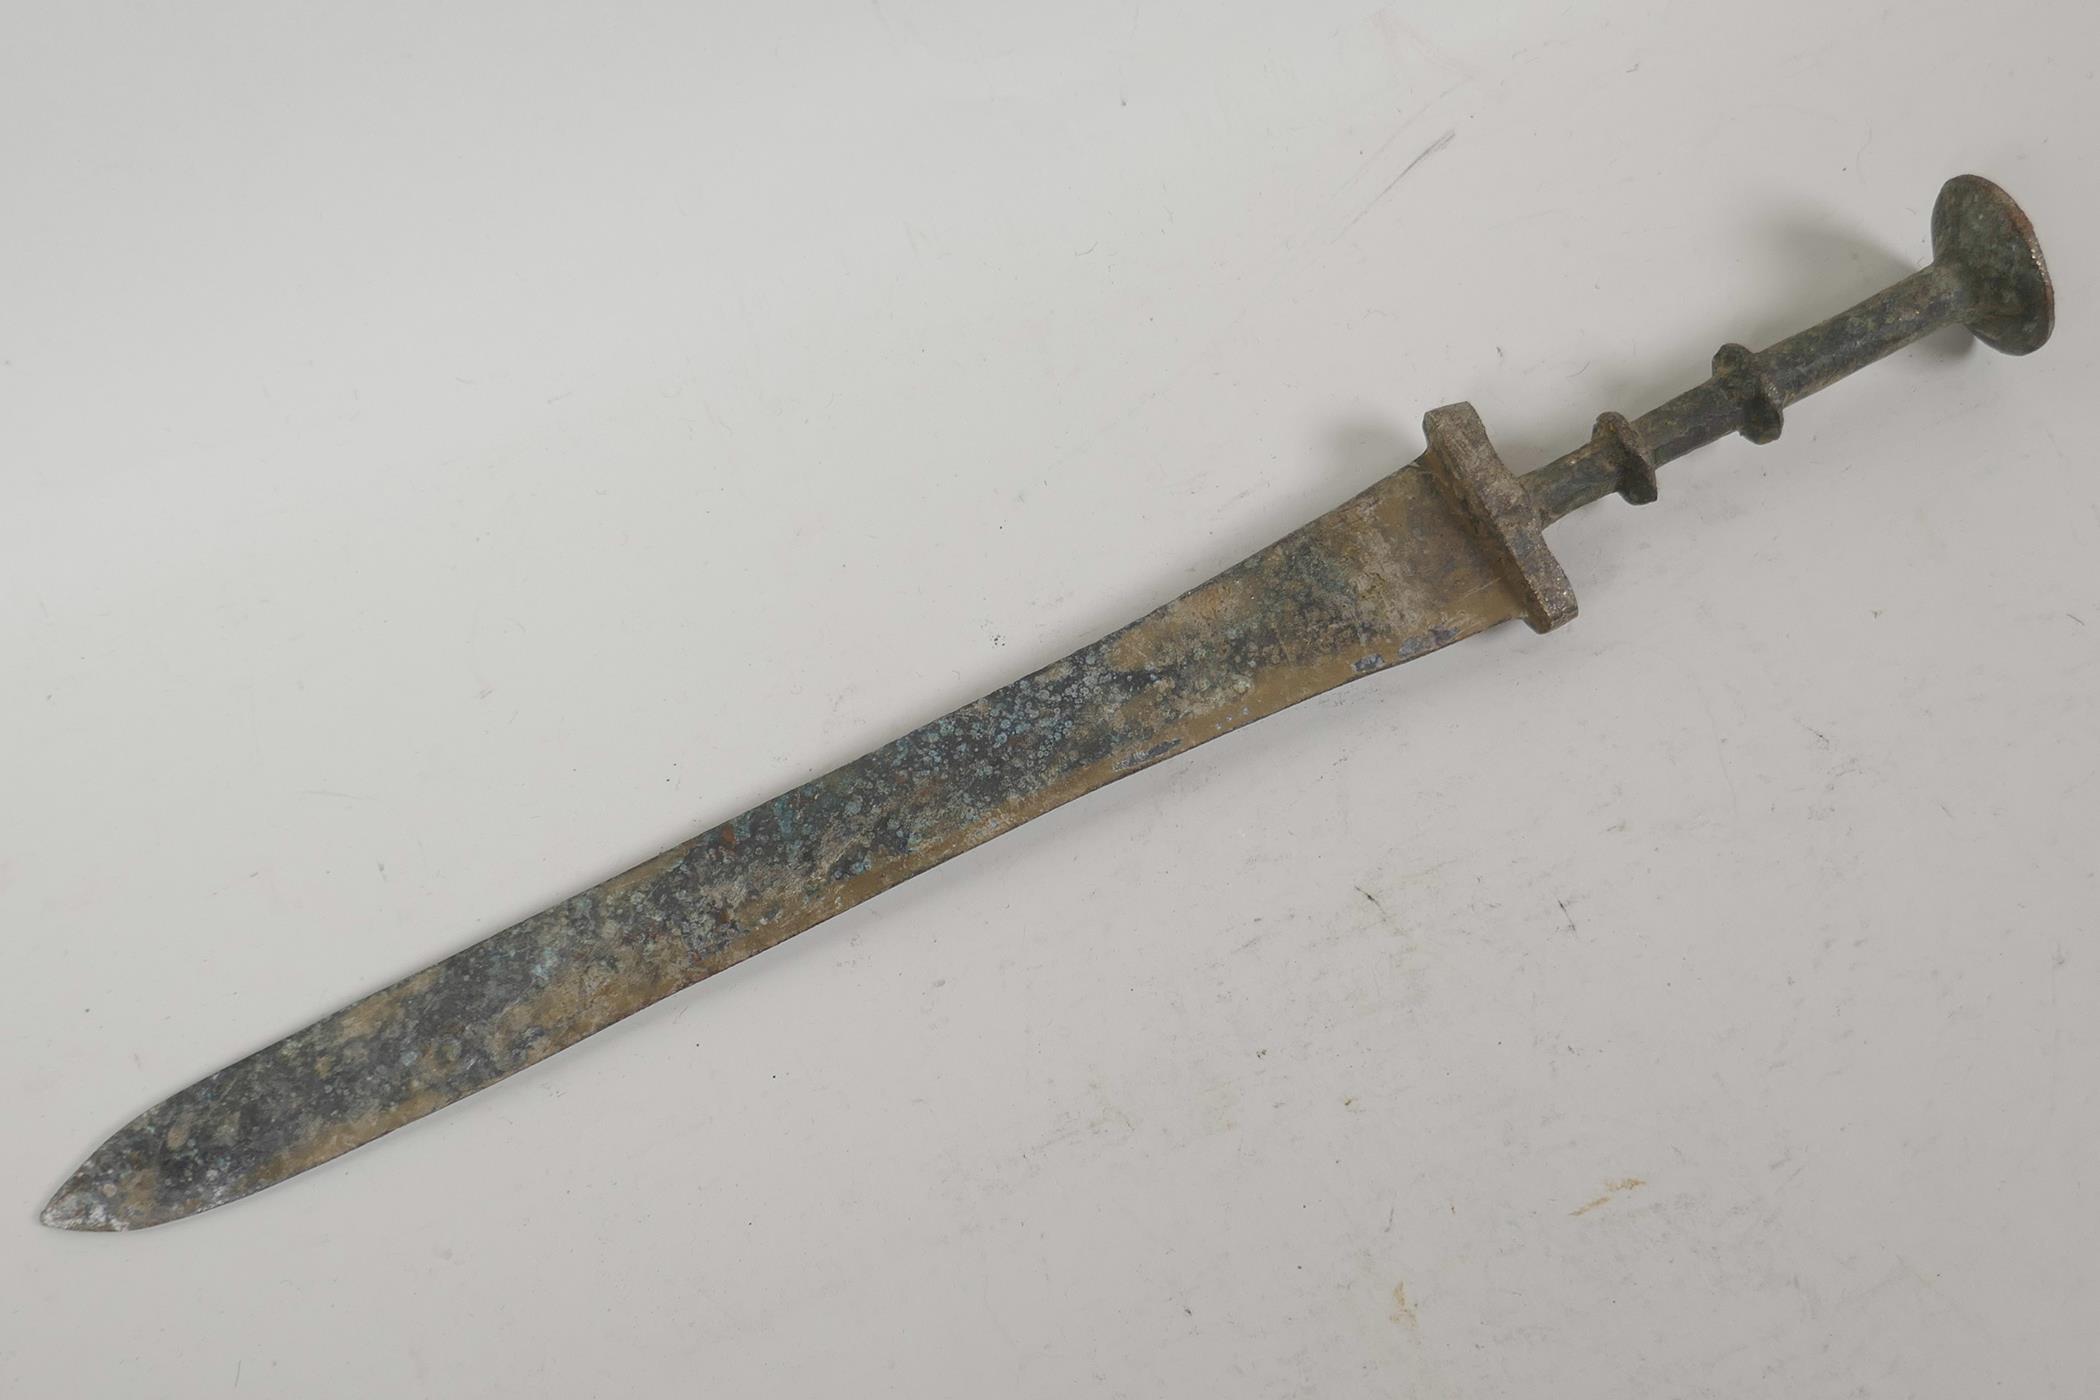 A verdigris bronze dagger, 15" long